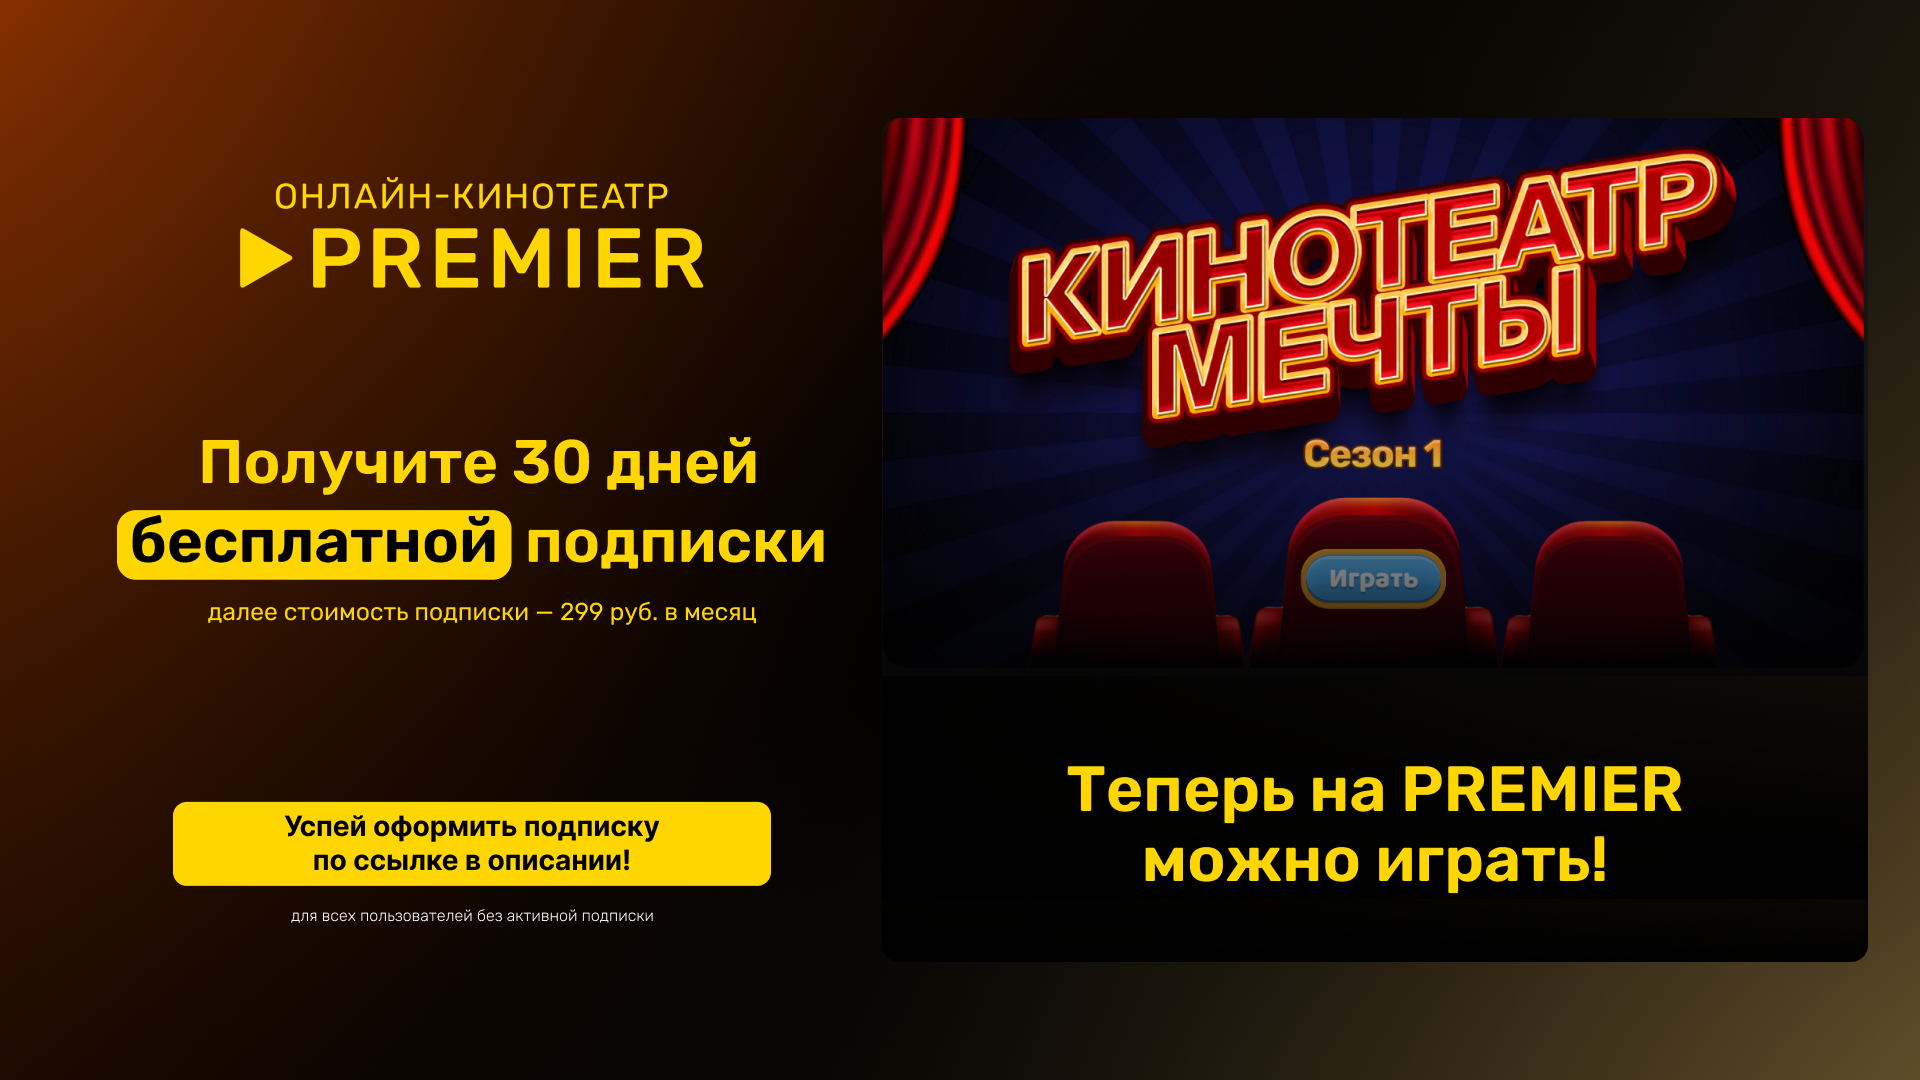 Premier (ТНТ Премьер) промокод в онлайн кинотеатр на подписку 30 дней, Как использовать промокод на